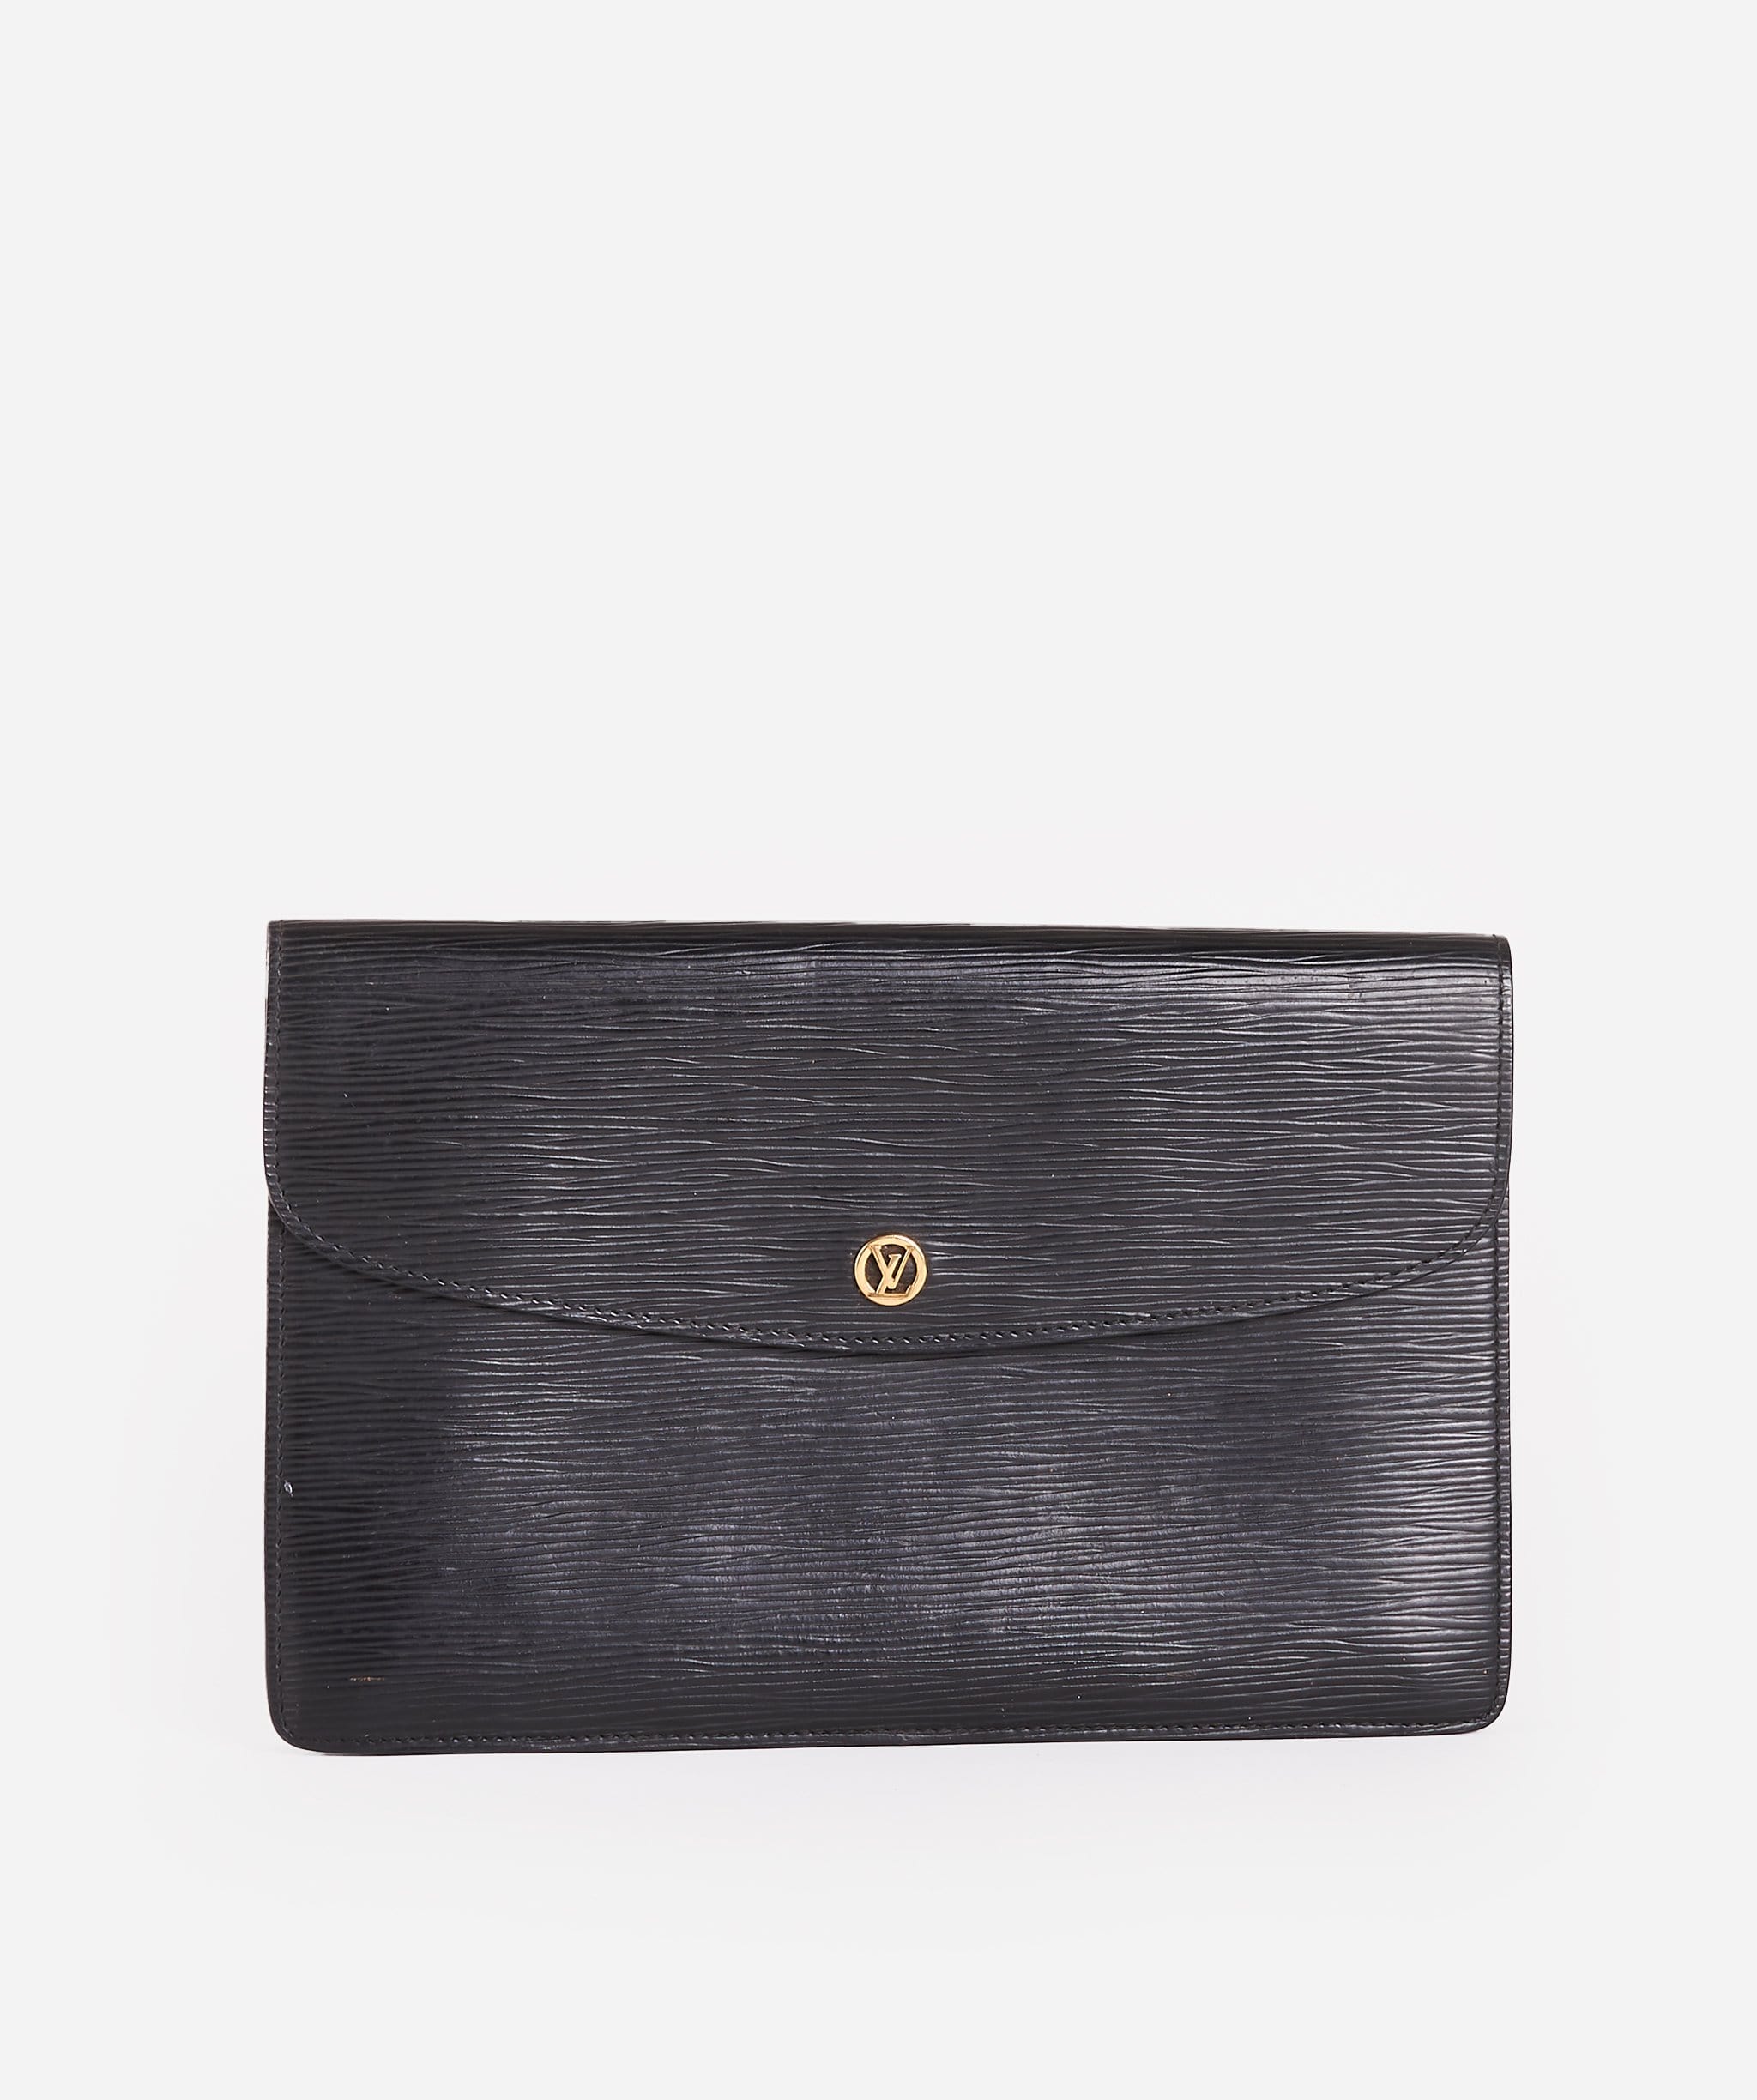 Montaigne vintage leather handbag Louis Vuitton White in Leather